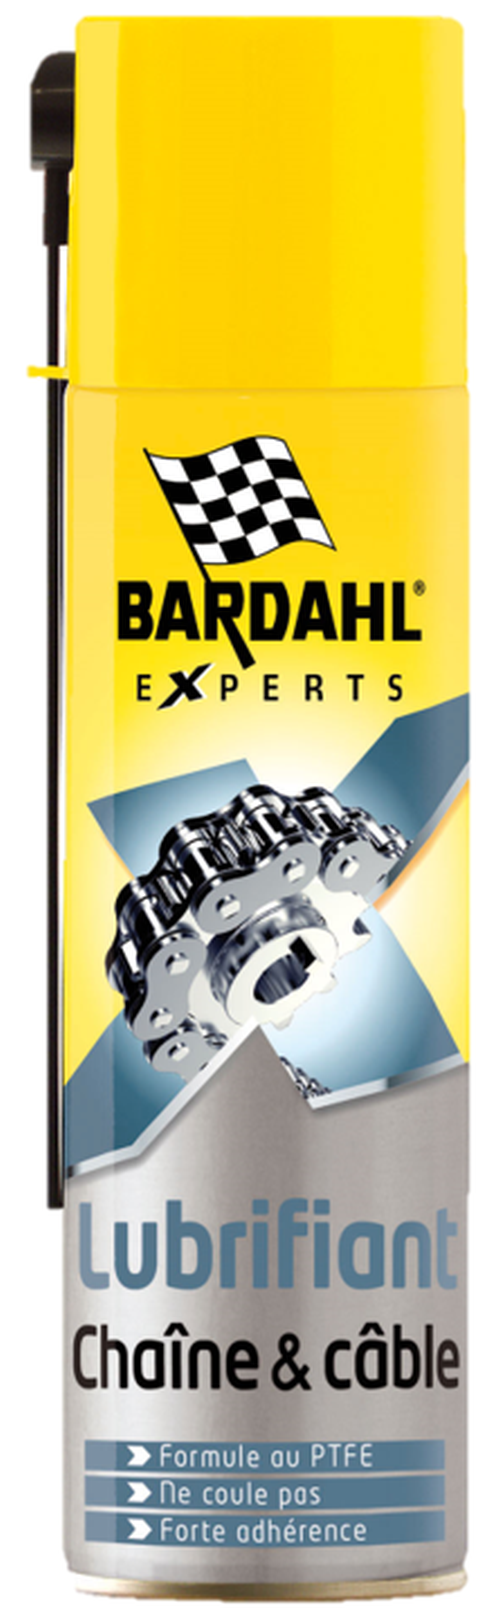 Bardahl : dégrippant, lubrifiant et huile moteur